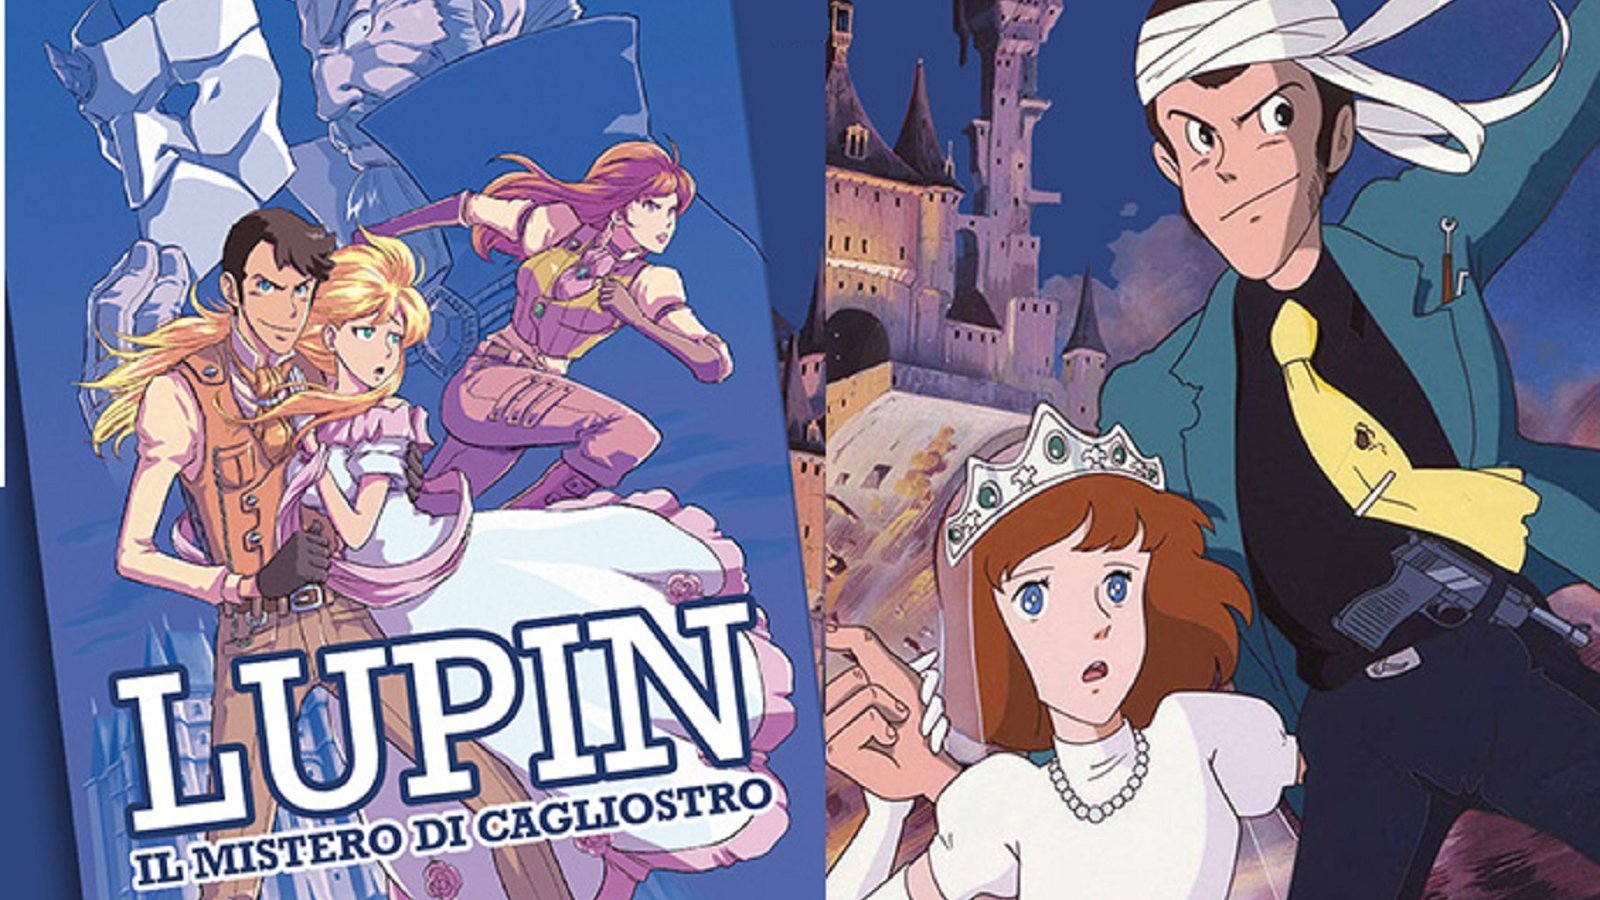 Lupin - Il mistero di Cagliostro, il romanzo arriva in libreria a maggio